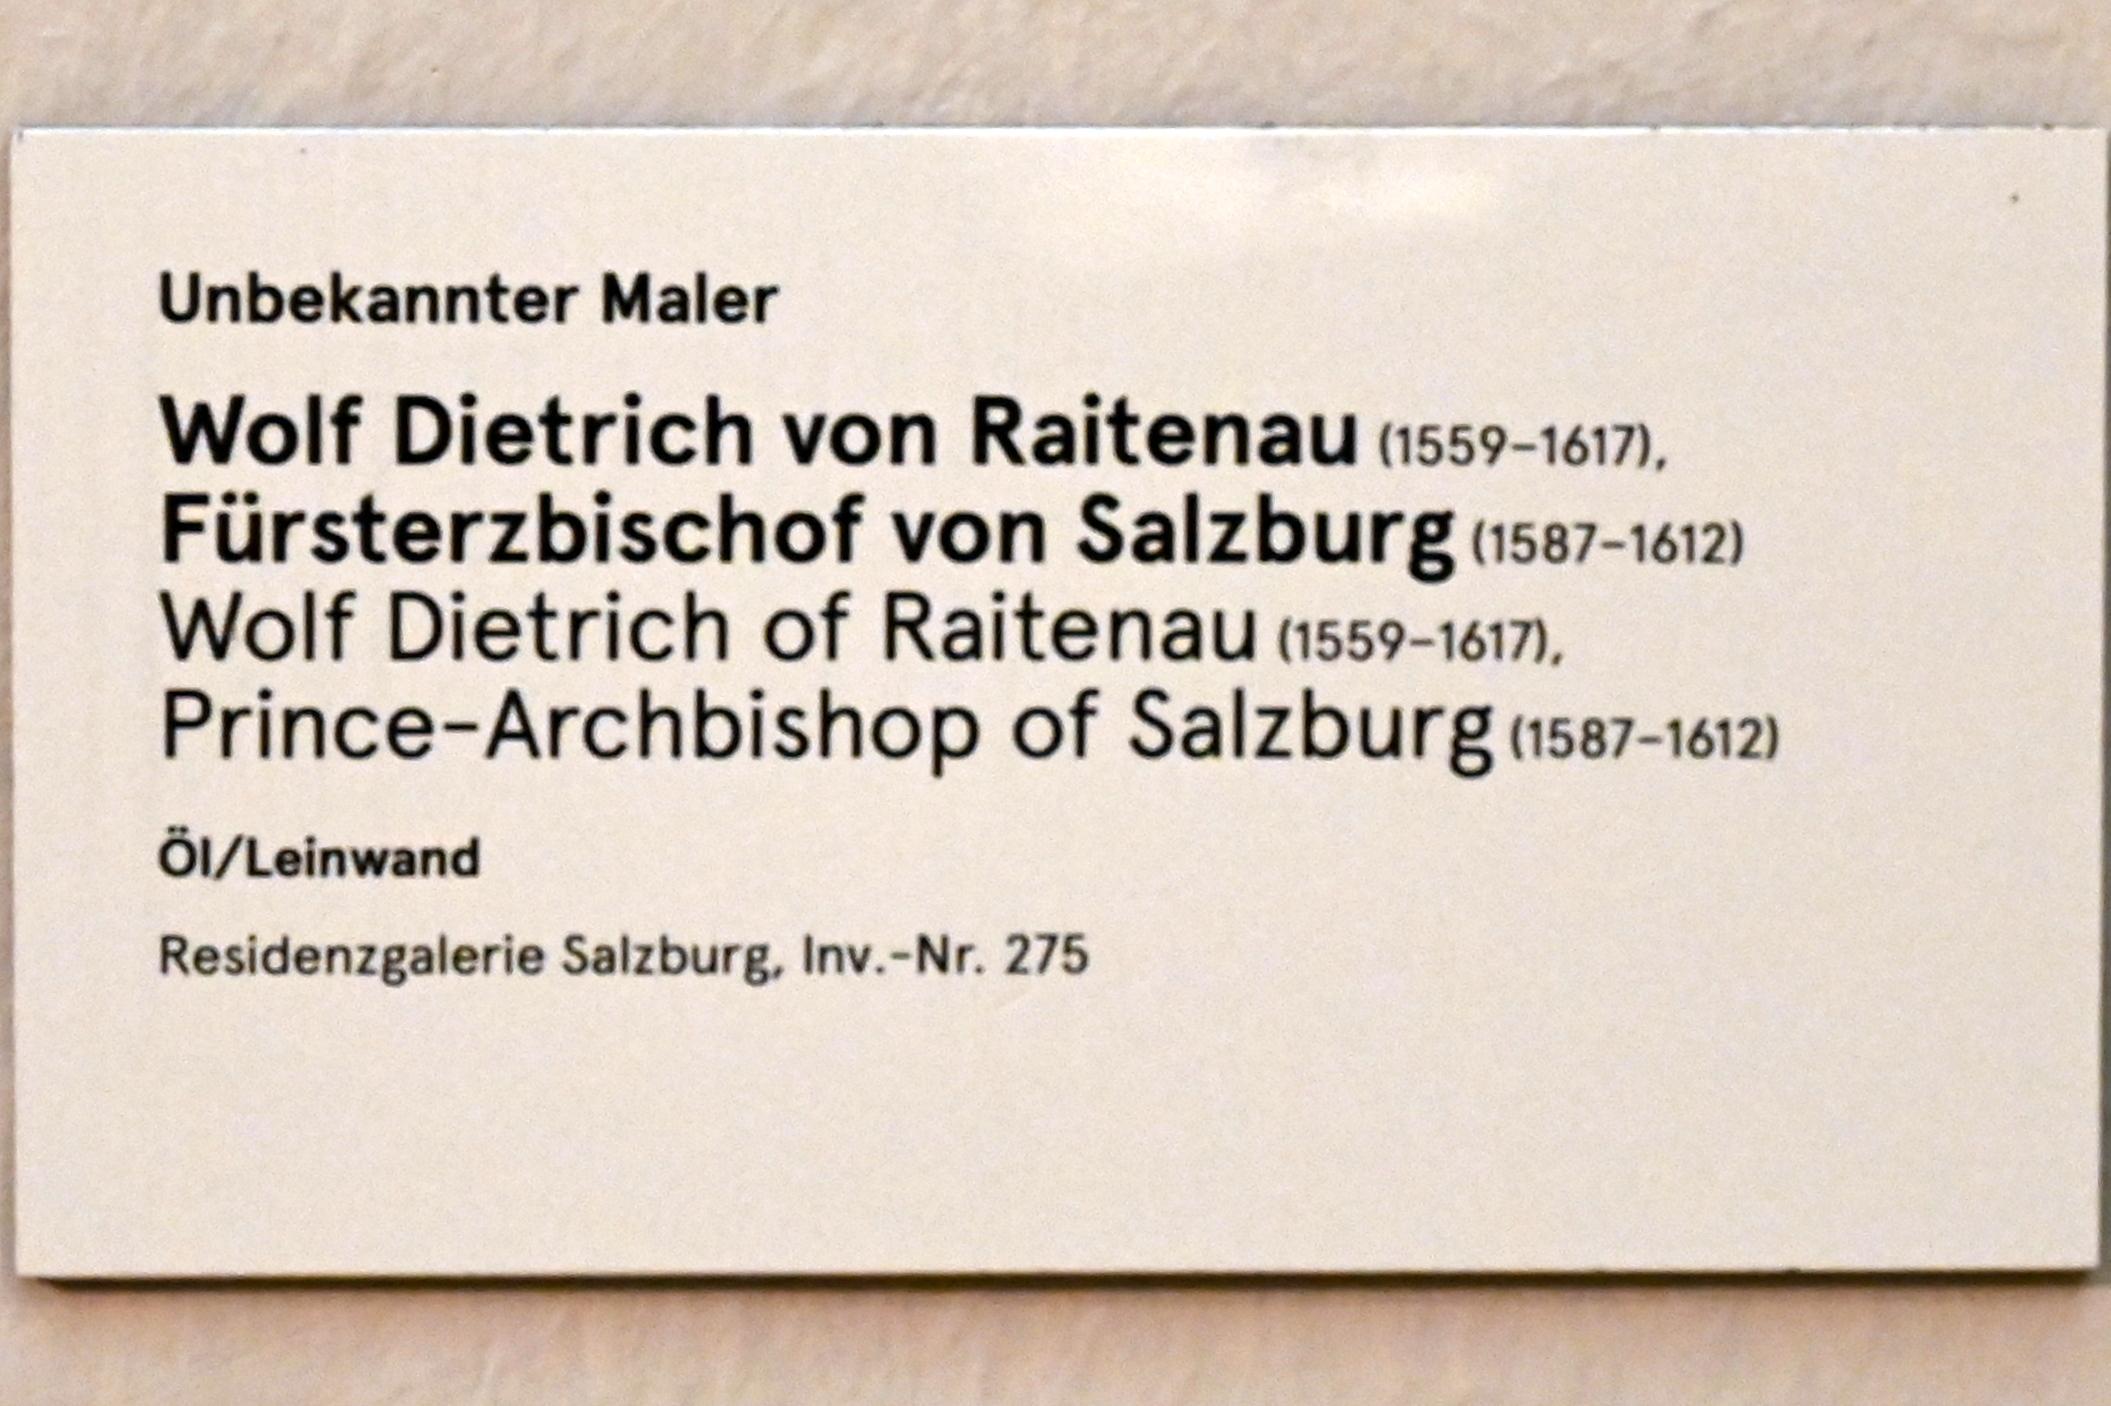 Wolf Dietrich von Raitenau, Fürsterzbischof von Salzburg, Salzburg, Salzburger Residenz, Residenzgalerie, Undatiert, Bild 2/2